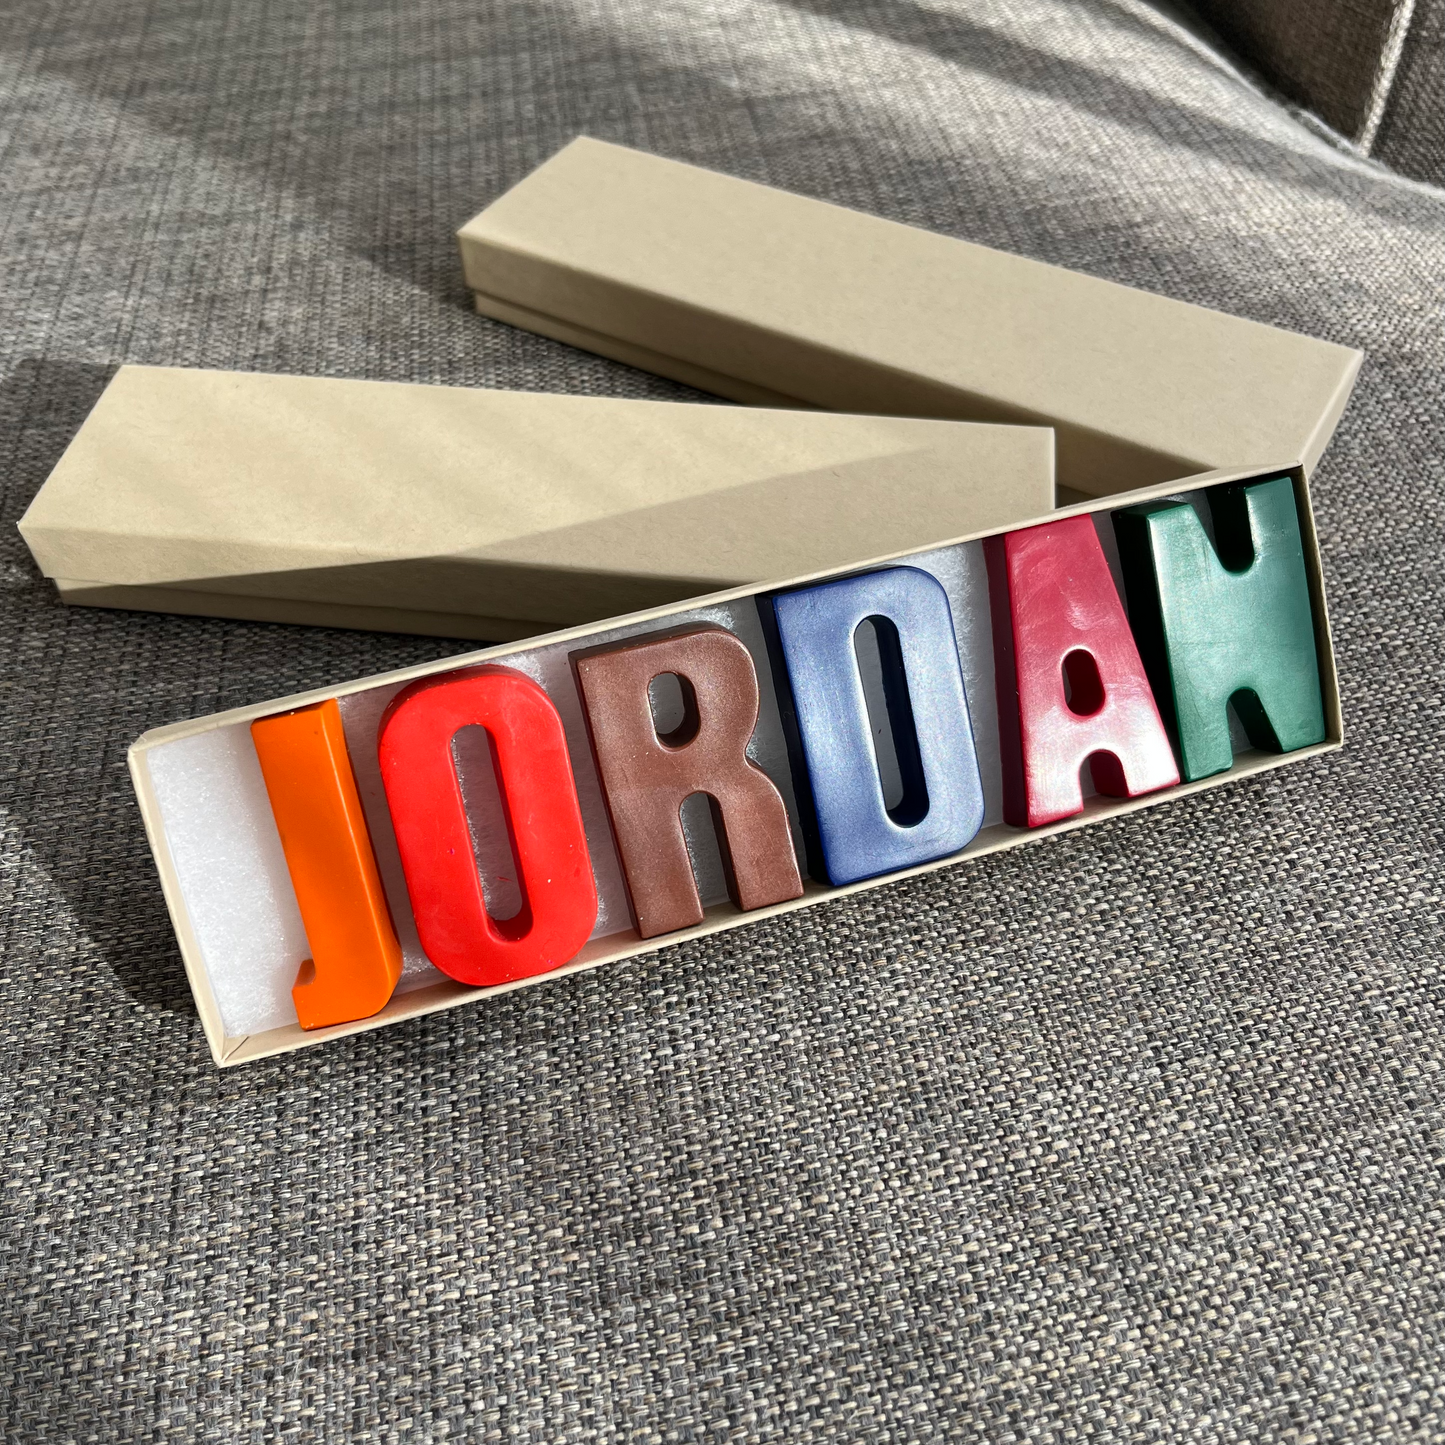 name JORDAN in crayons presented in a craft box. J is orange, O is red, R is brown, D is blue, A is burgundy, N is green 